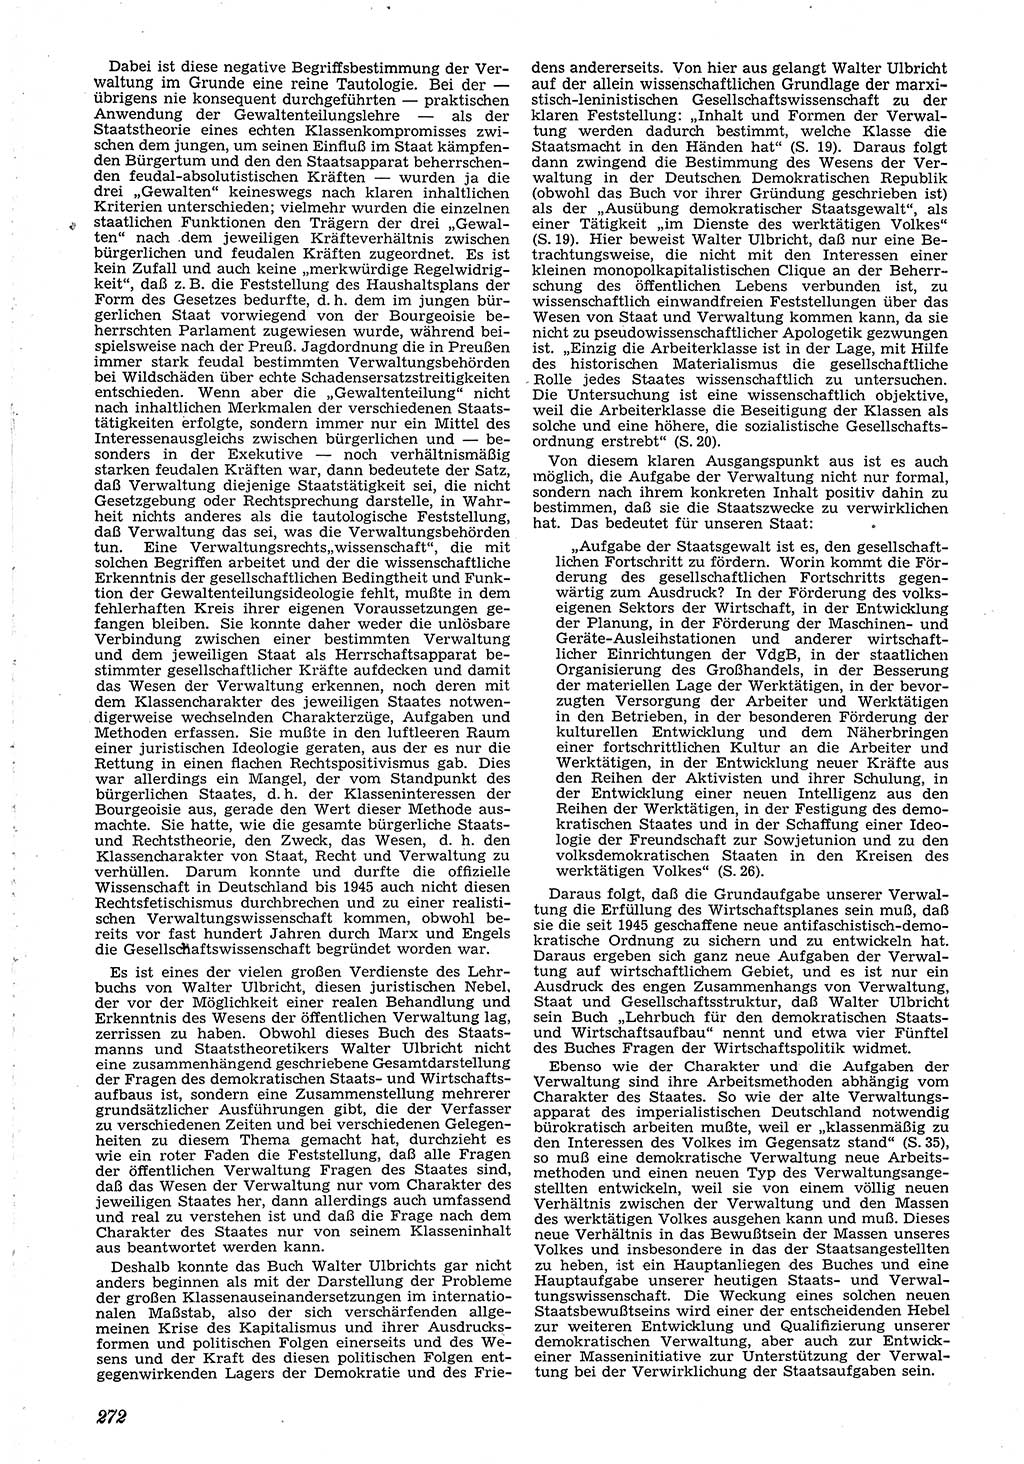 Neue Justiz (NJ), Zeitschrift für Recht und Rechtswissenschaft [Deutsche Demokratische Republik (DDR)], 4. Jahrgang 1950, Seite 272 (NJ DDR 1950, S. 272)